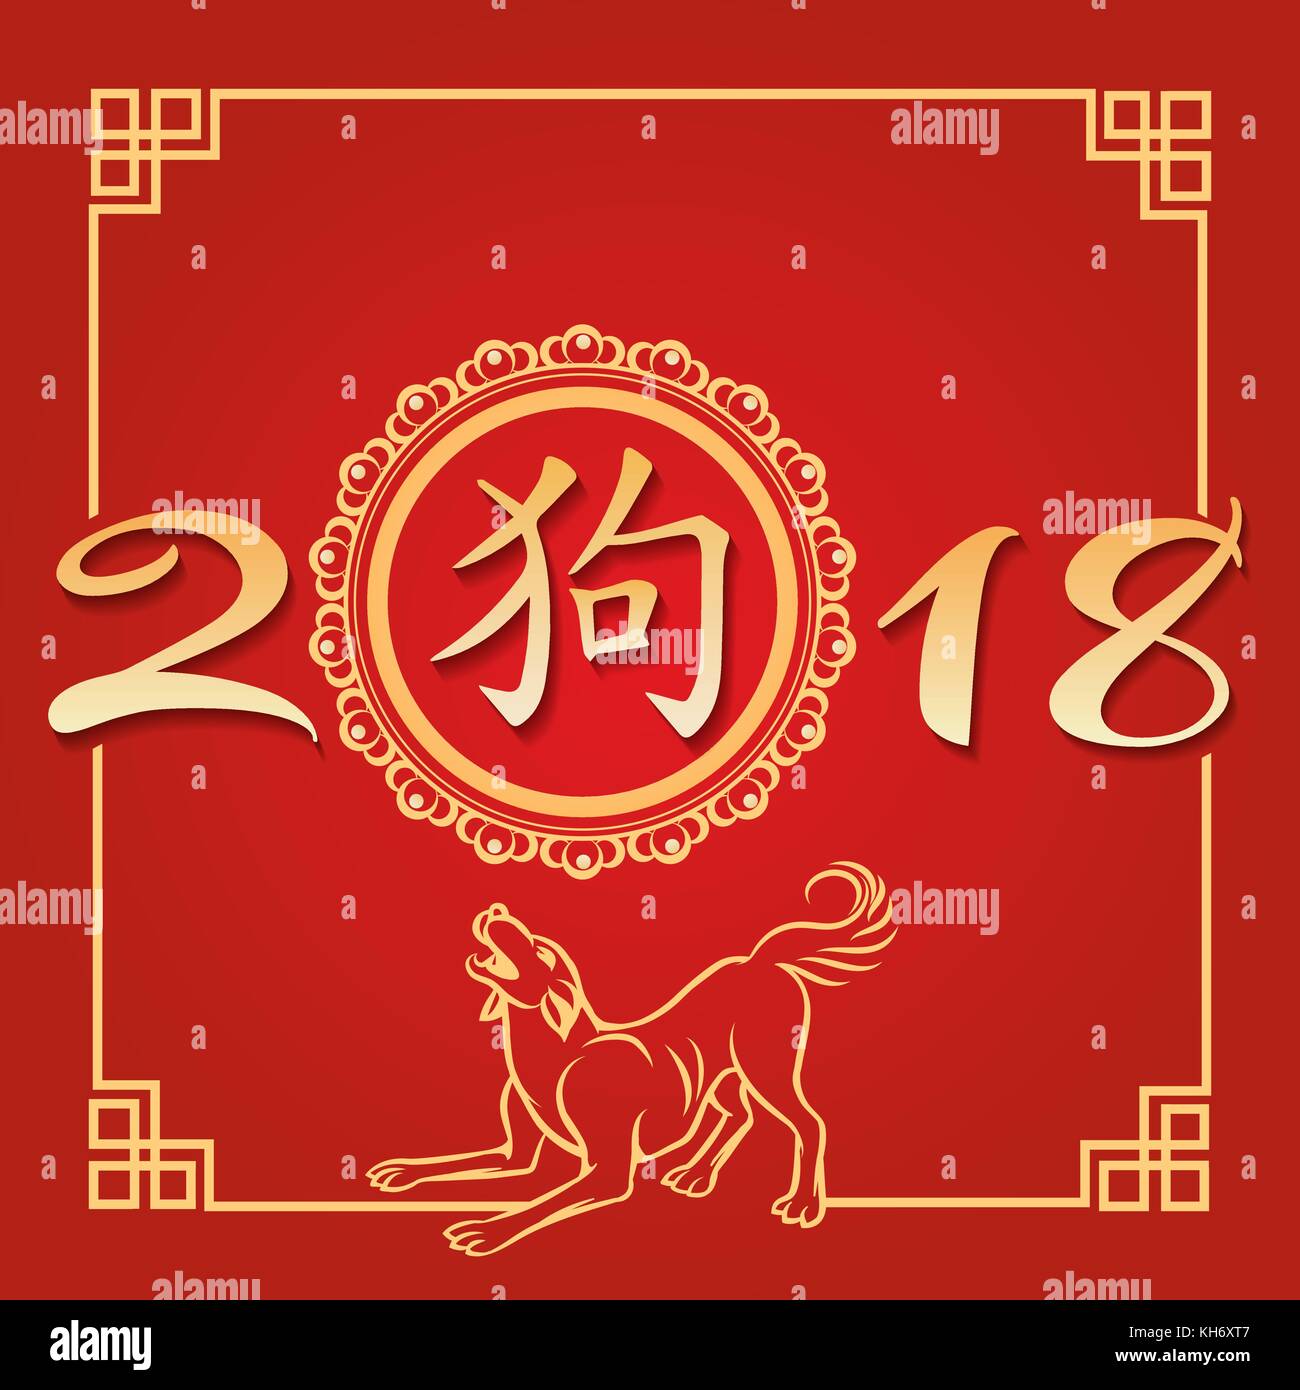 Nouvel an chinois 2018 de yellow dog poster design (traduction en chinois : Chien) Illustration de Vecteur